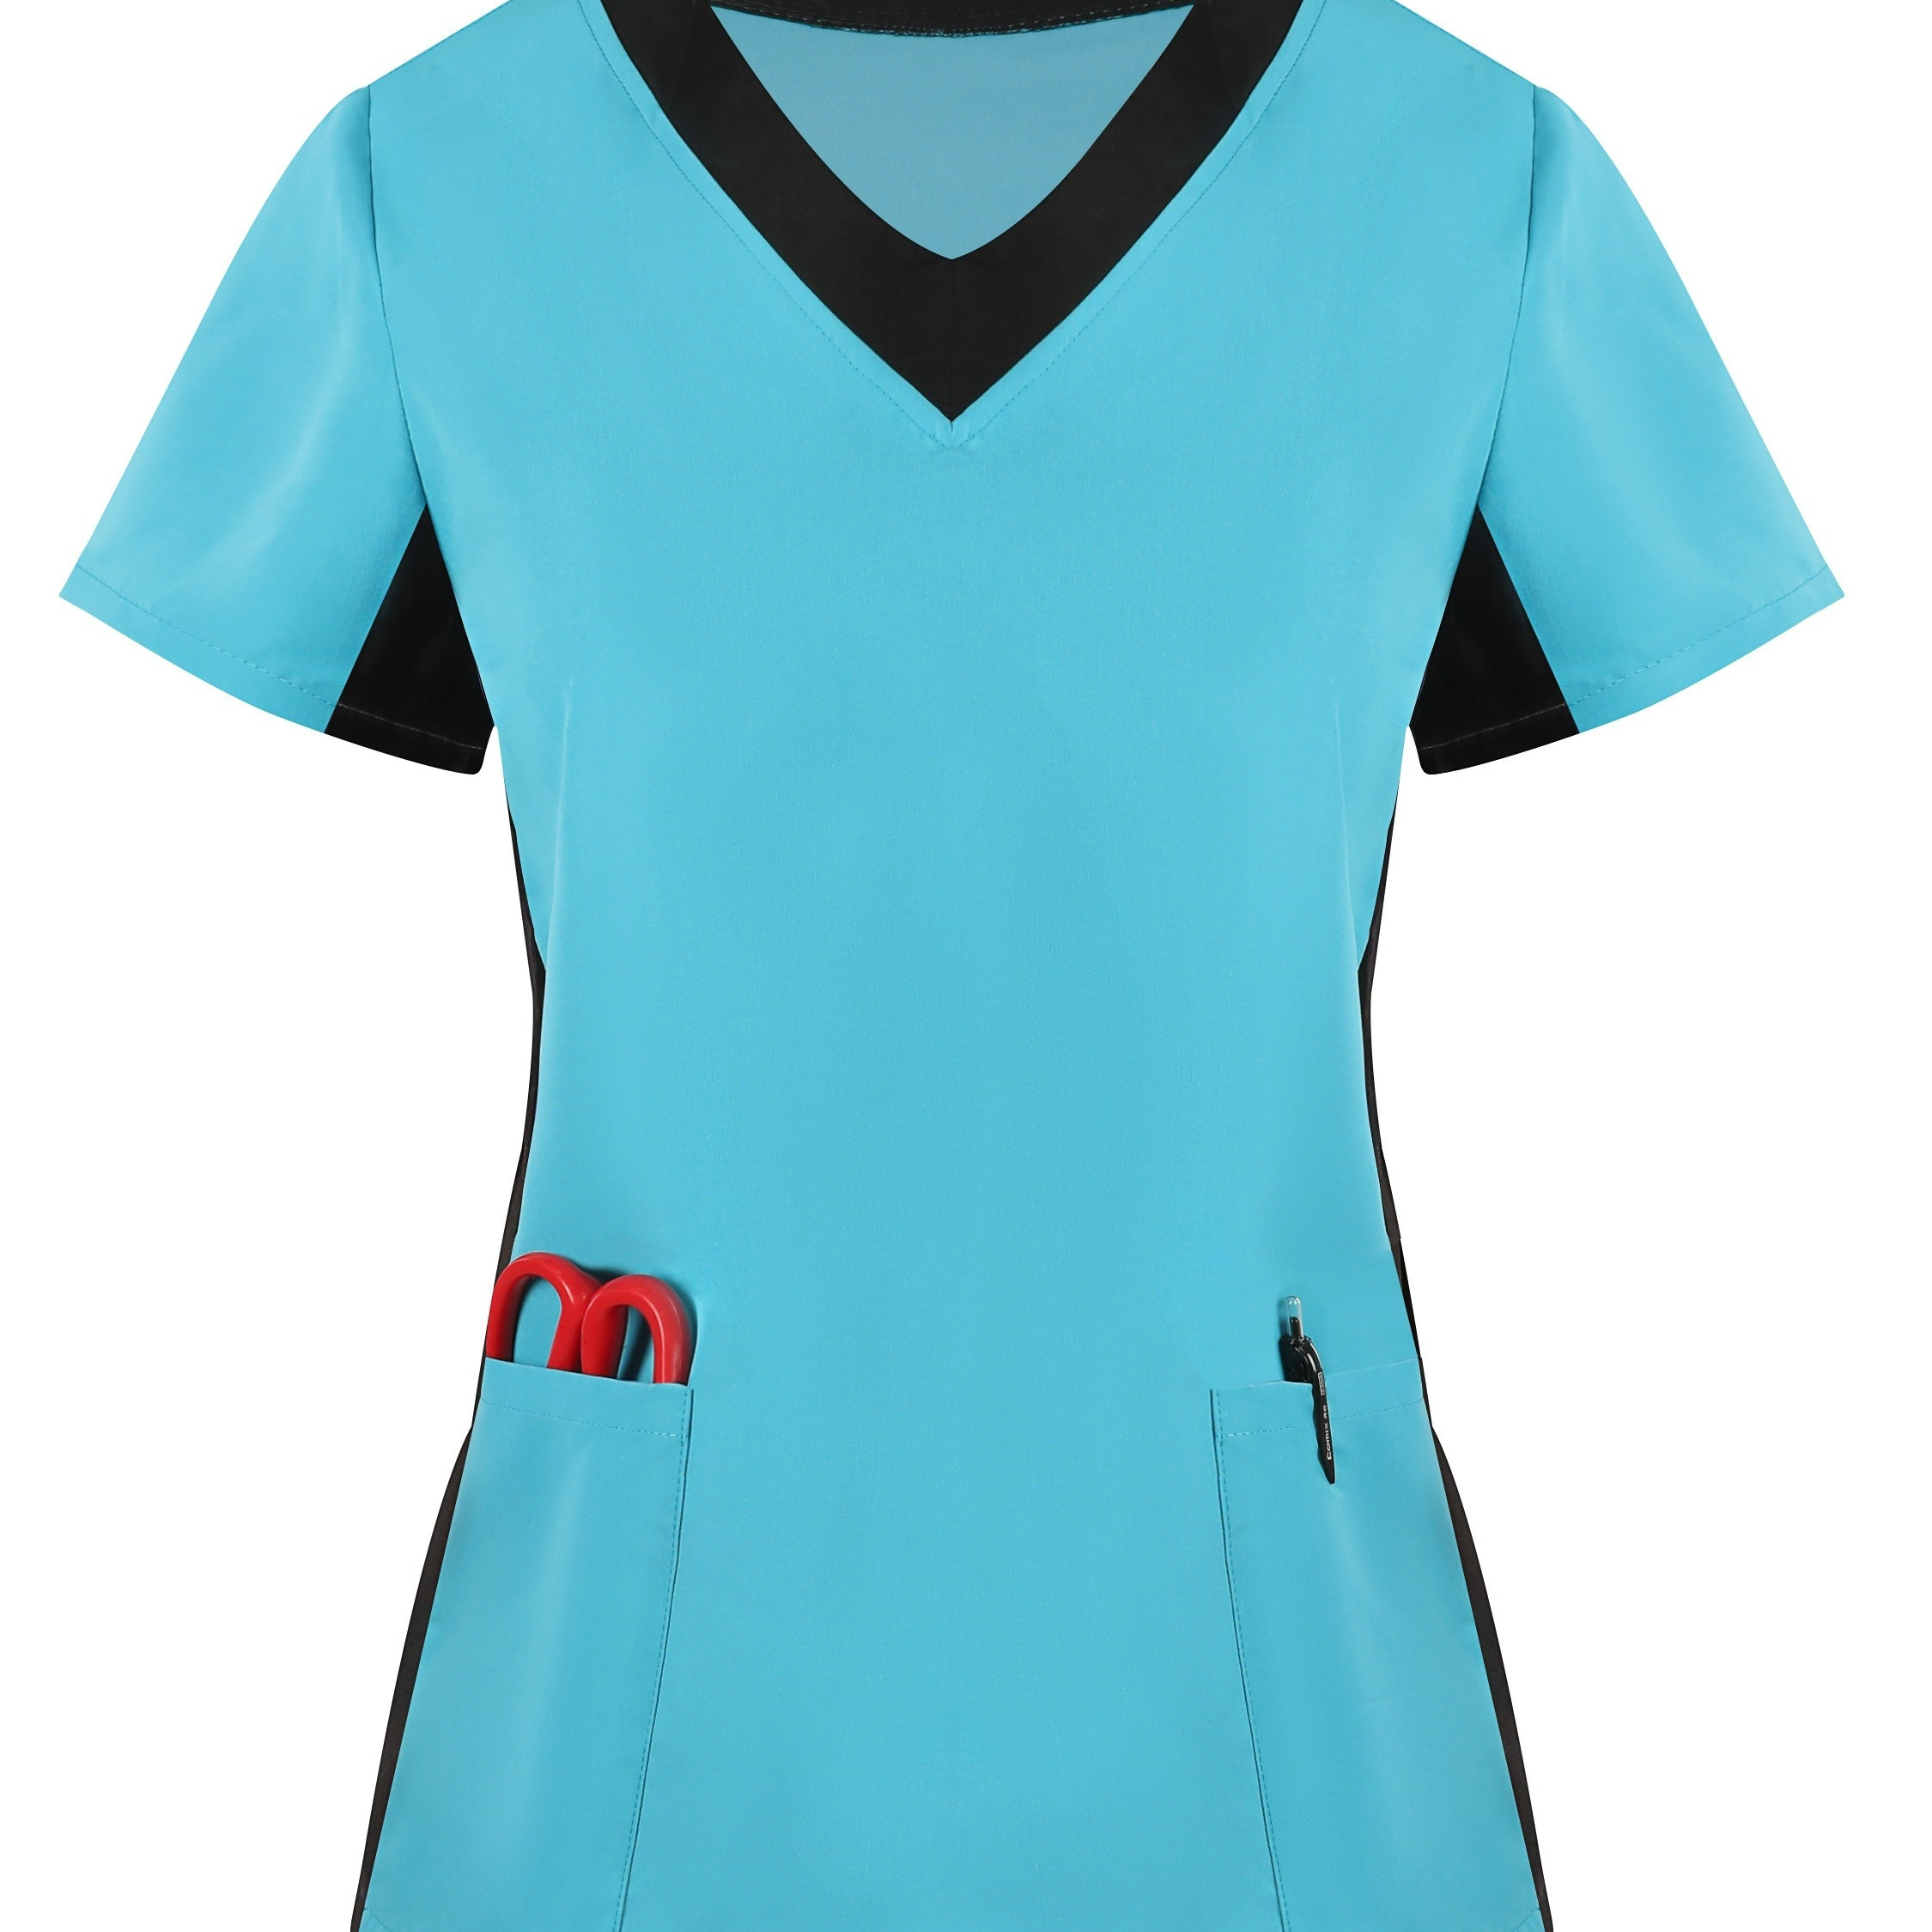 

Plus Size Colorblock Trim Pockets Top, Short Sleeve V Neck Health Care Uniform For Nurse, Women's Plus Size clothing